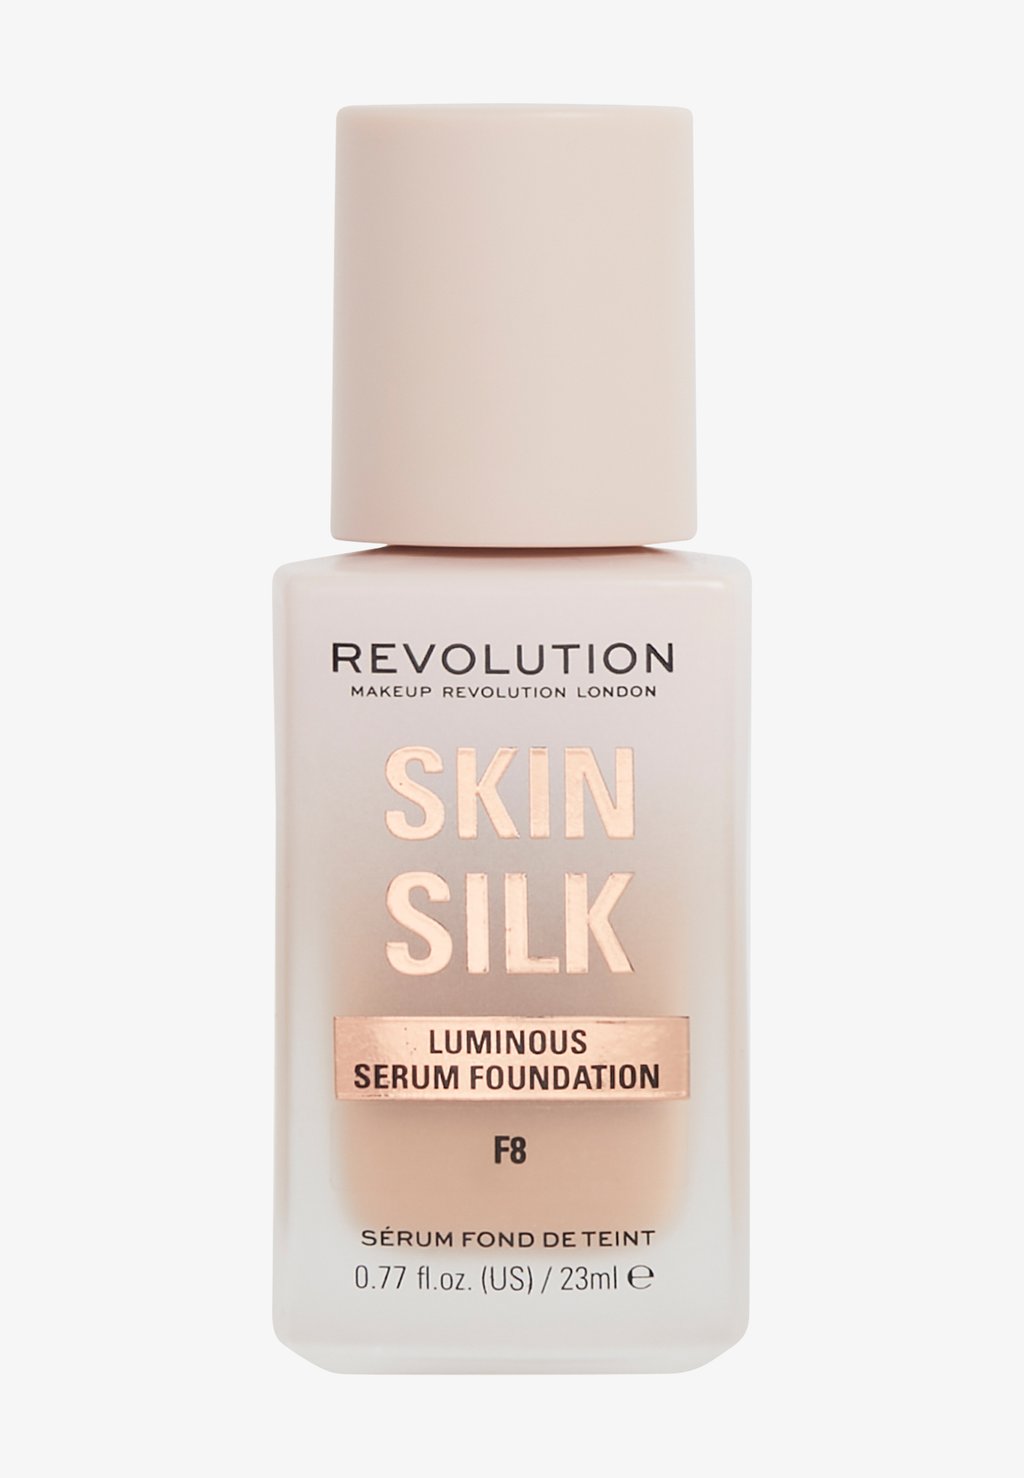 Тональный крем Revolution Skin Silk Serum Foundation Makeup Revolution, цвет f8